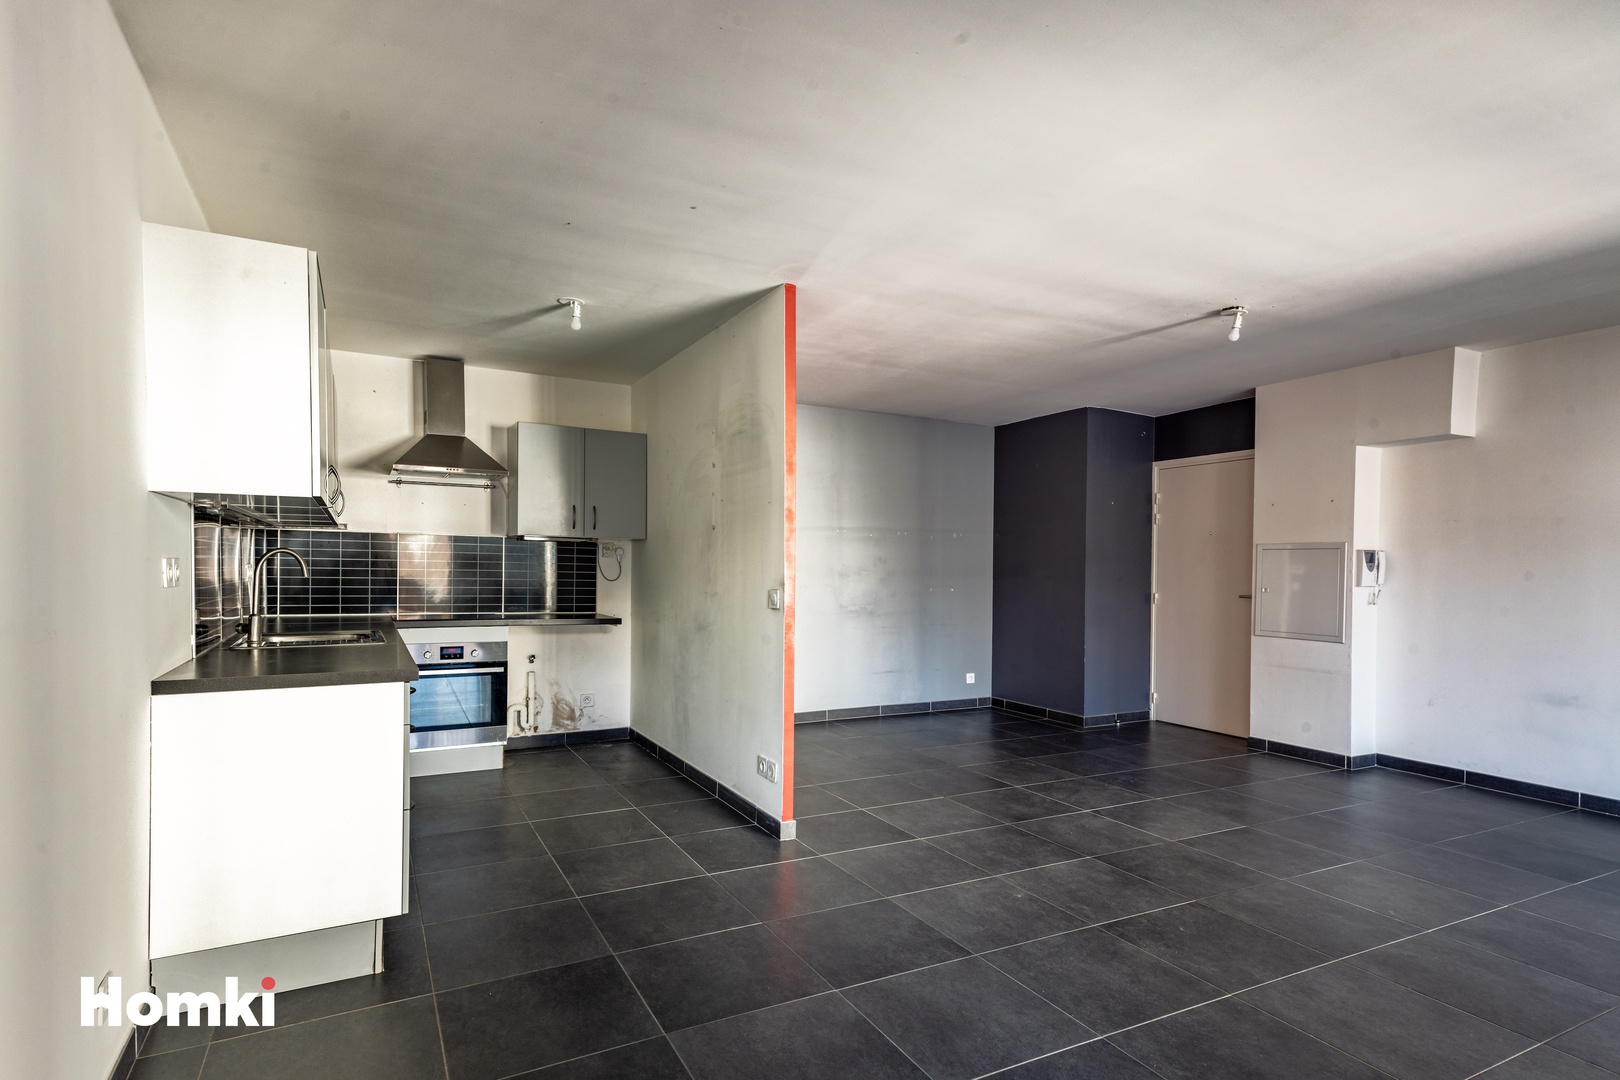 Homki - Vente Appartement  de 73.0 m² à Marseille 13002